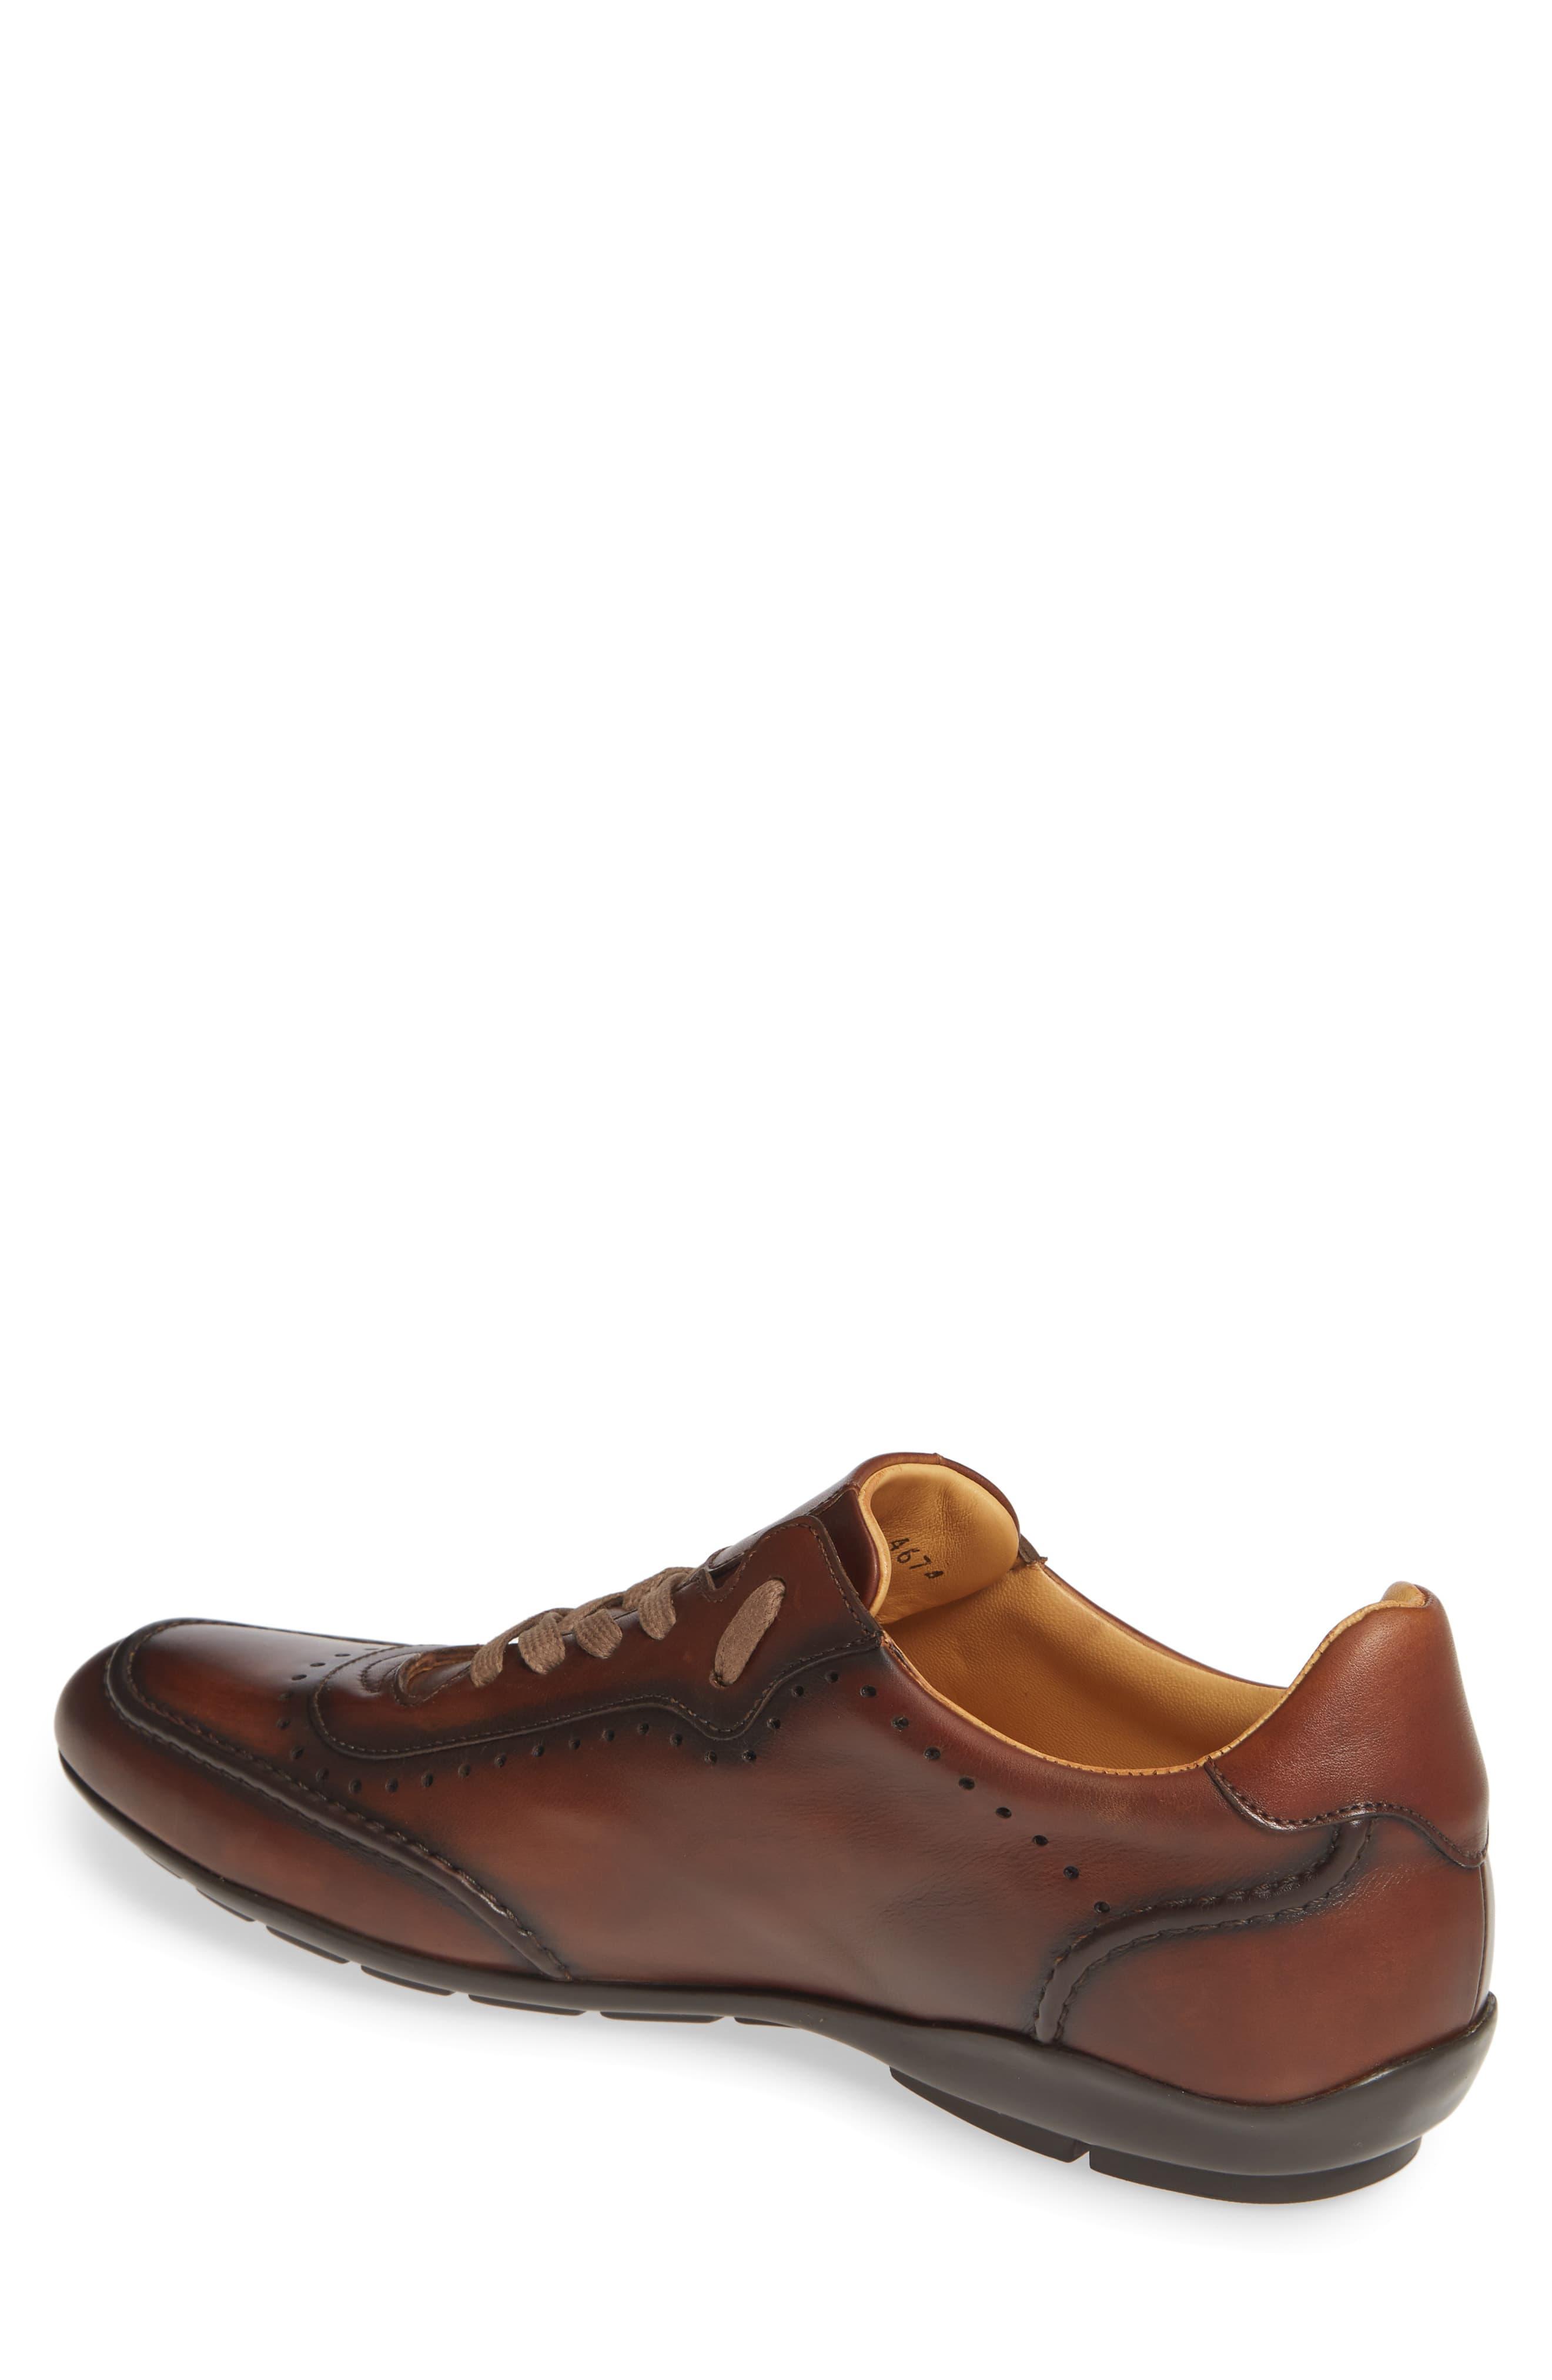 Mezlan Leather Tivoli Sneaker in Cognac Leather (Brown) for Men - Lyst